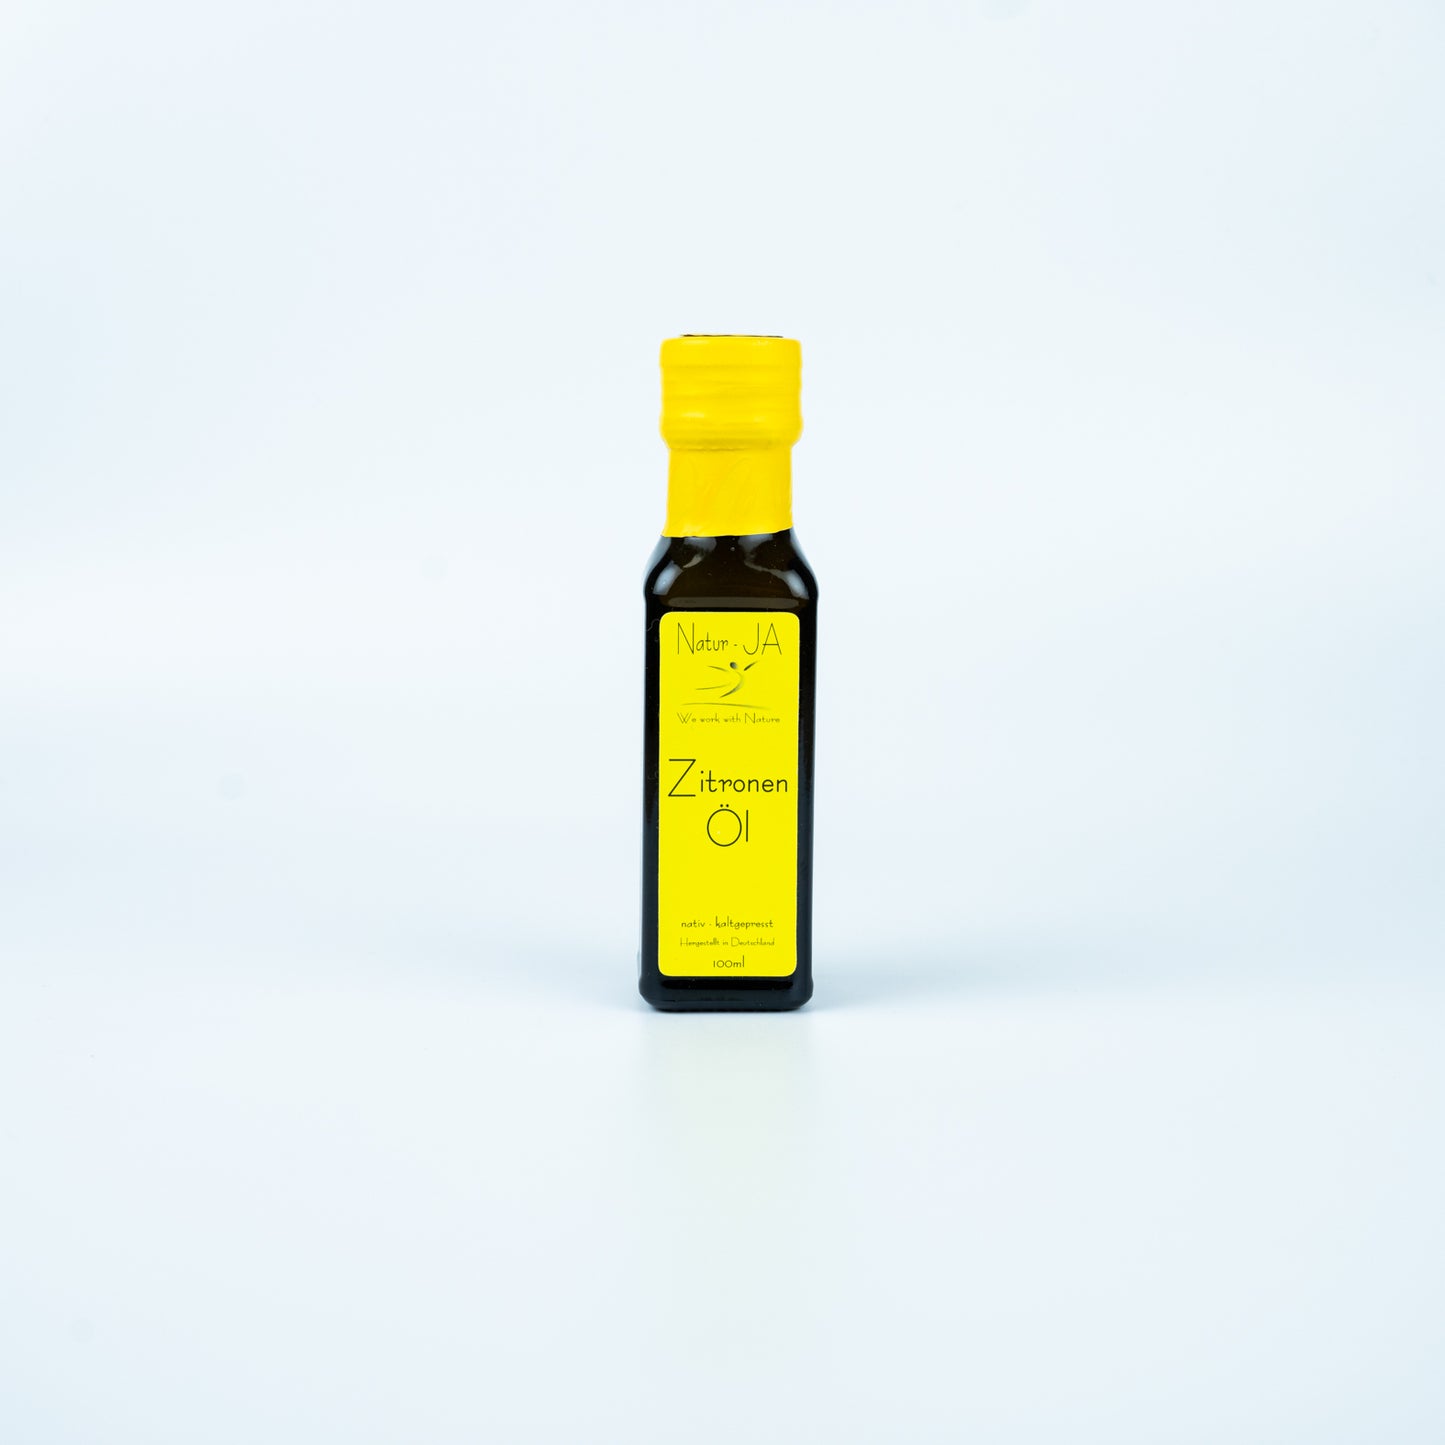 Zitronen Öl, Natur-JA, 100 ml